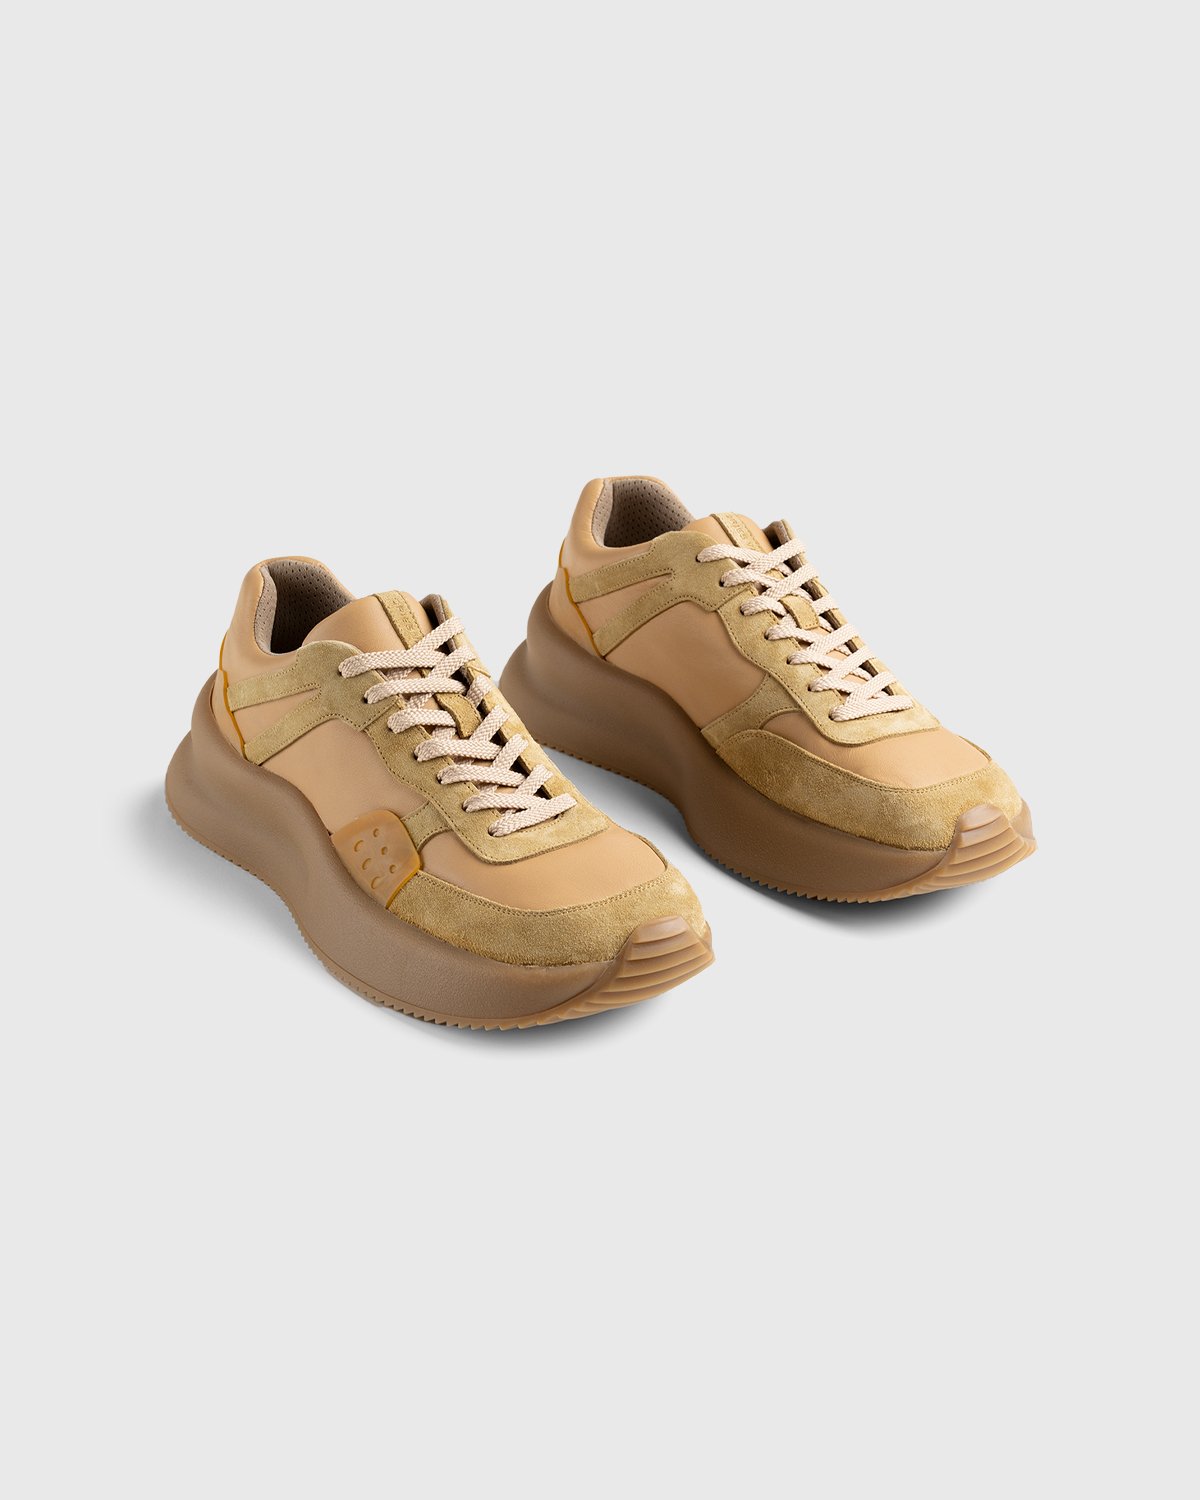 Dries van Noten - Platform Sneaker Camel - Footwear - Brown - Image 4